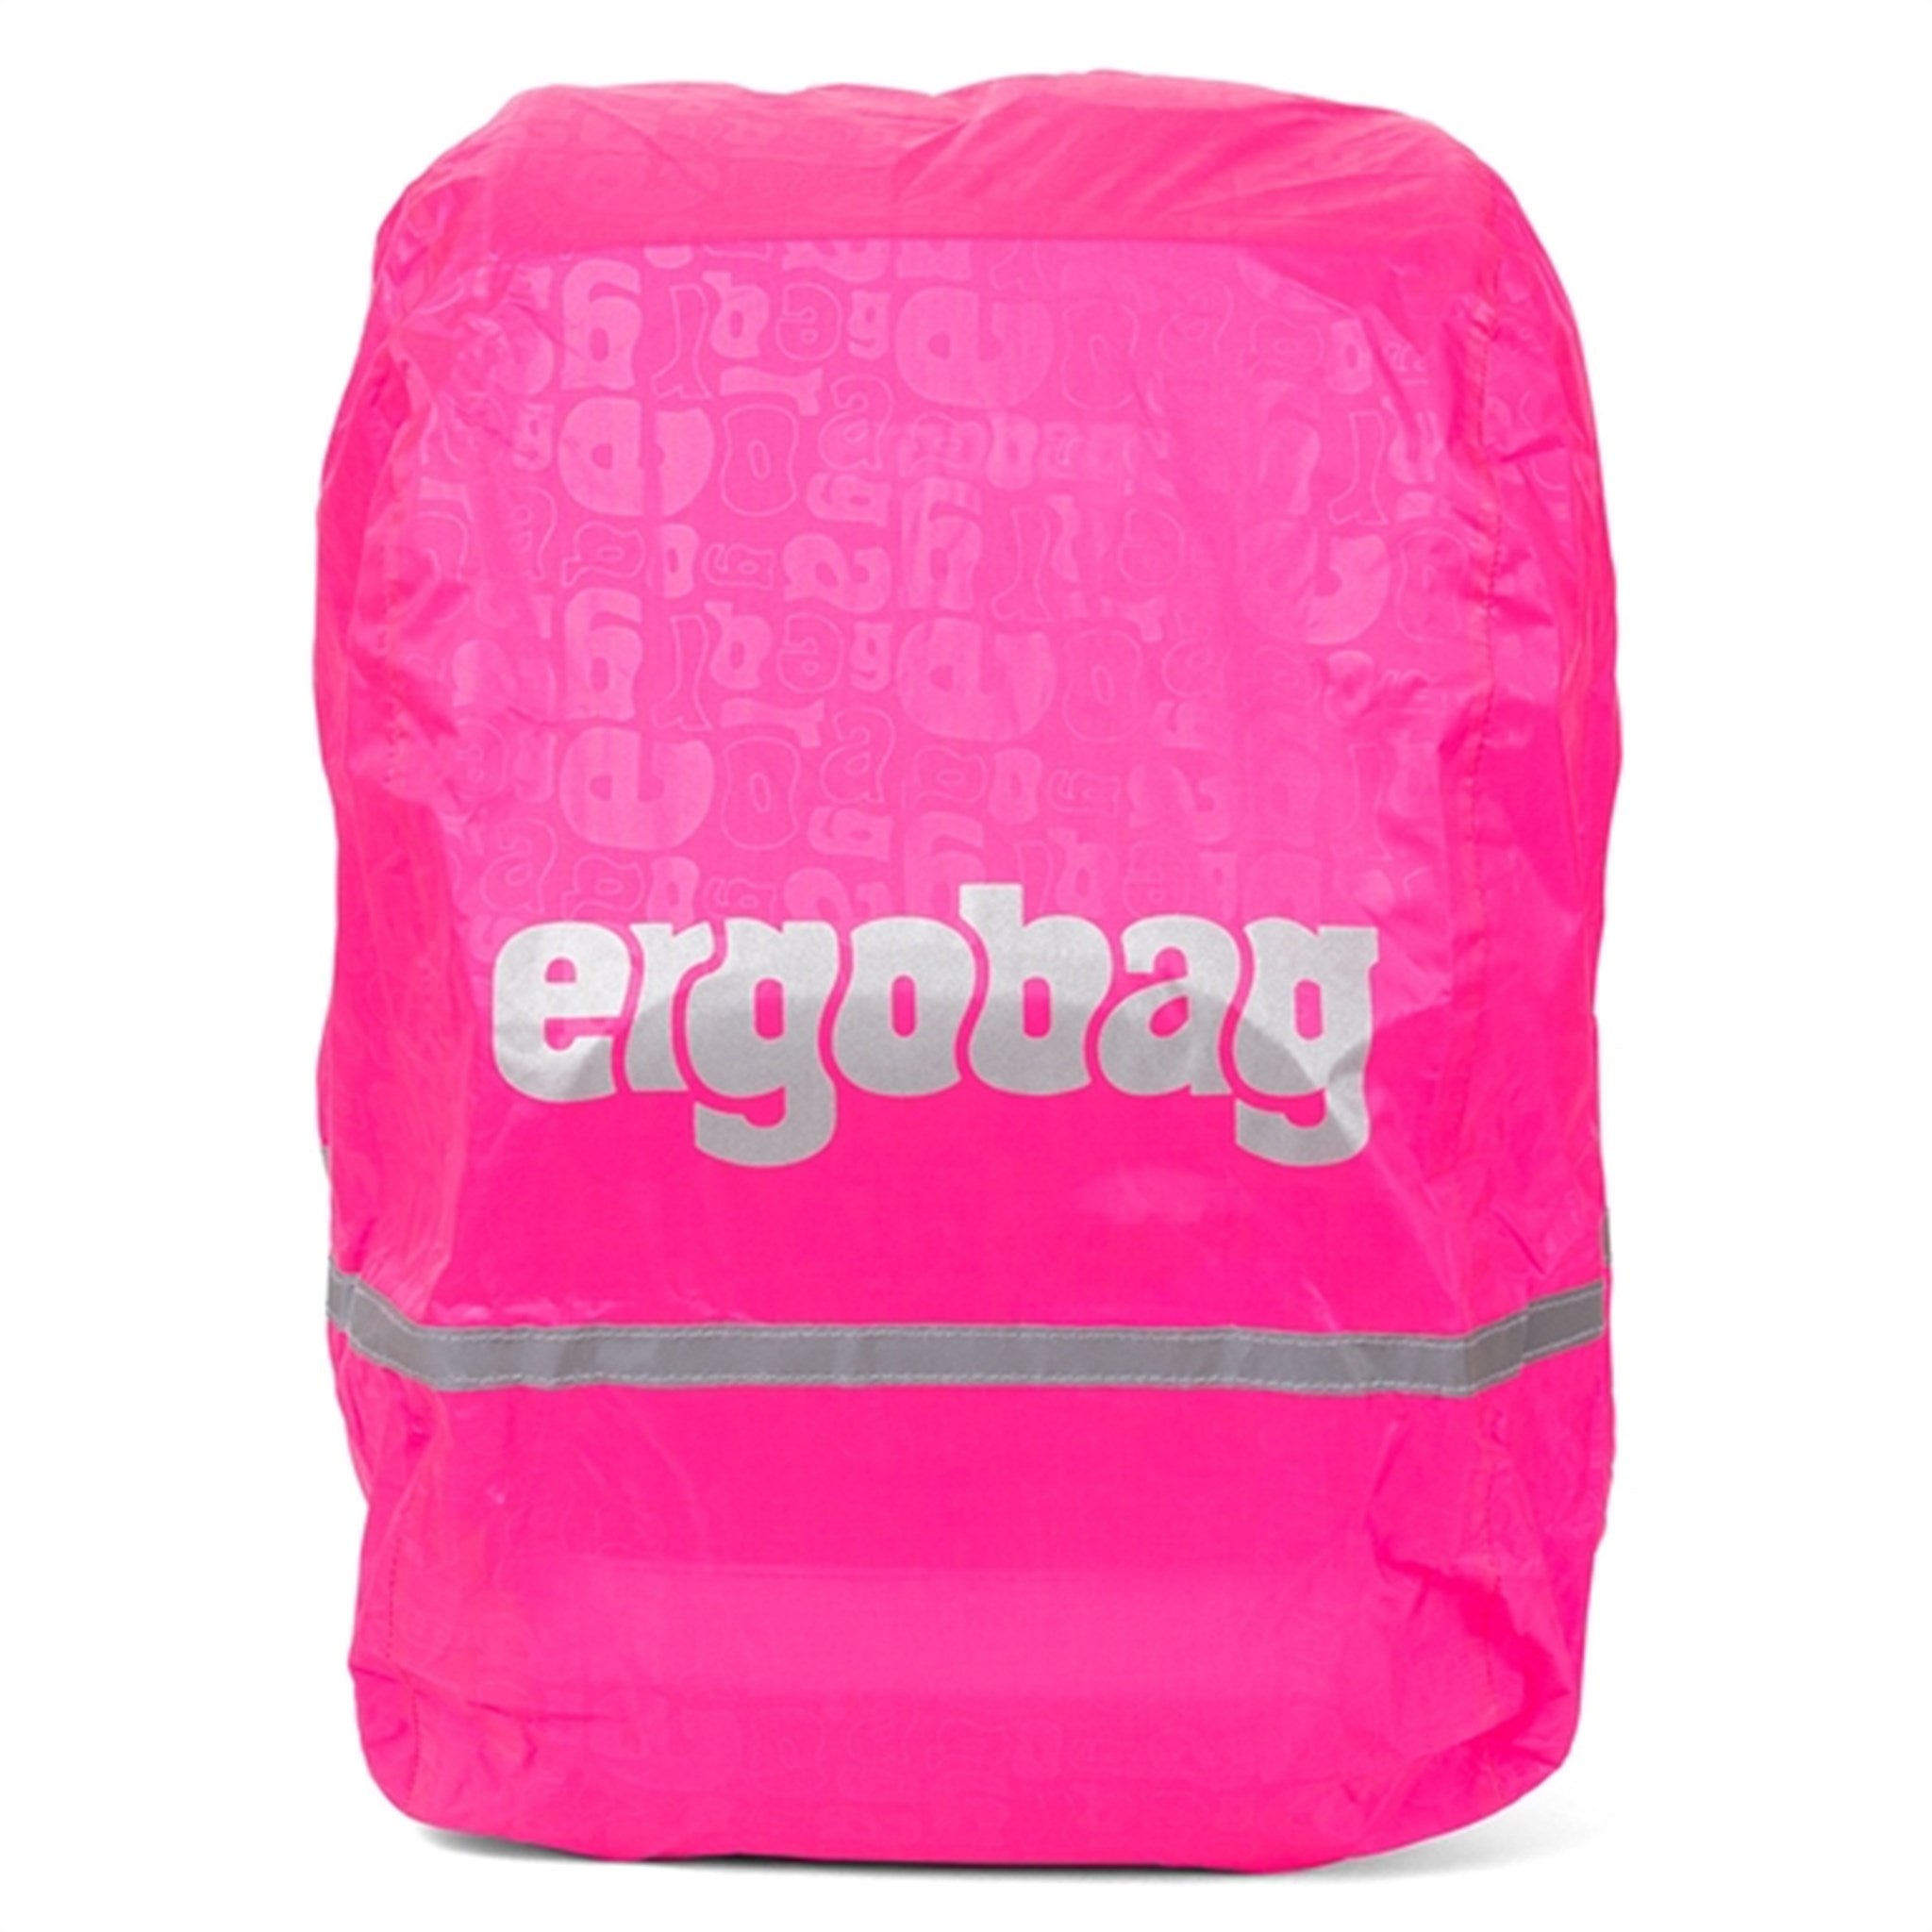 Ergobag Raincover Pink 2